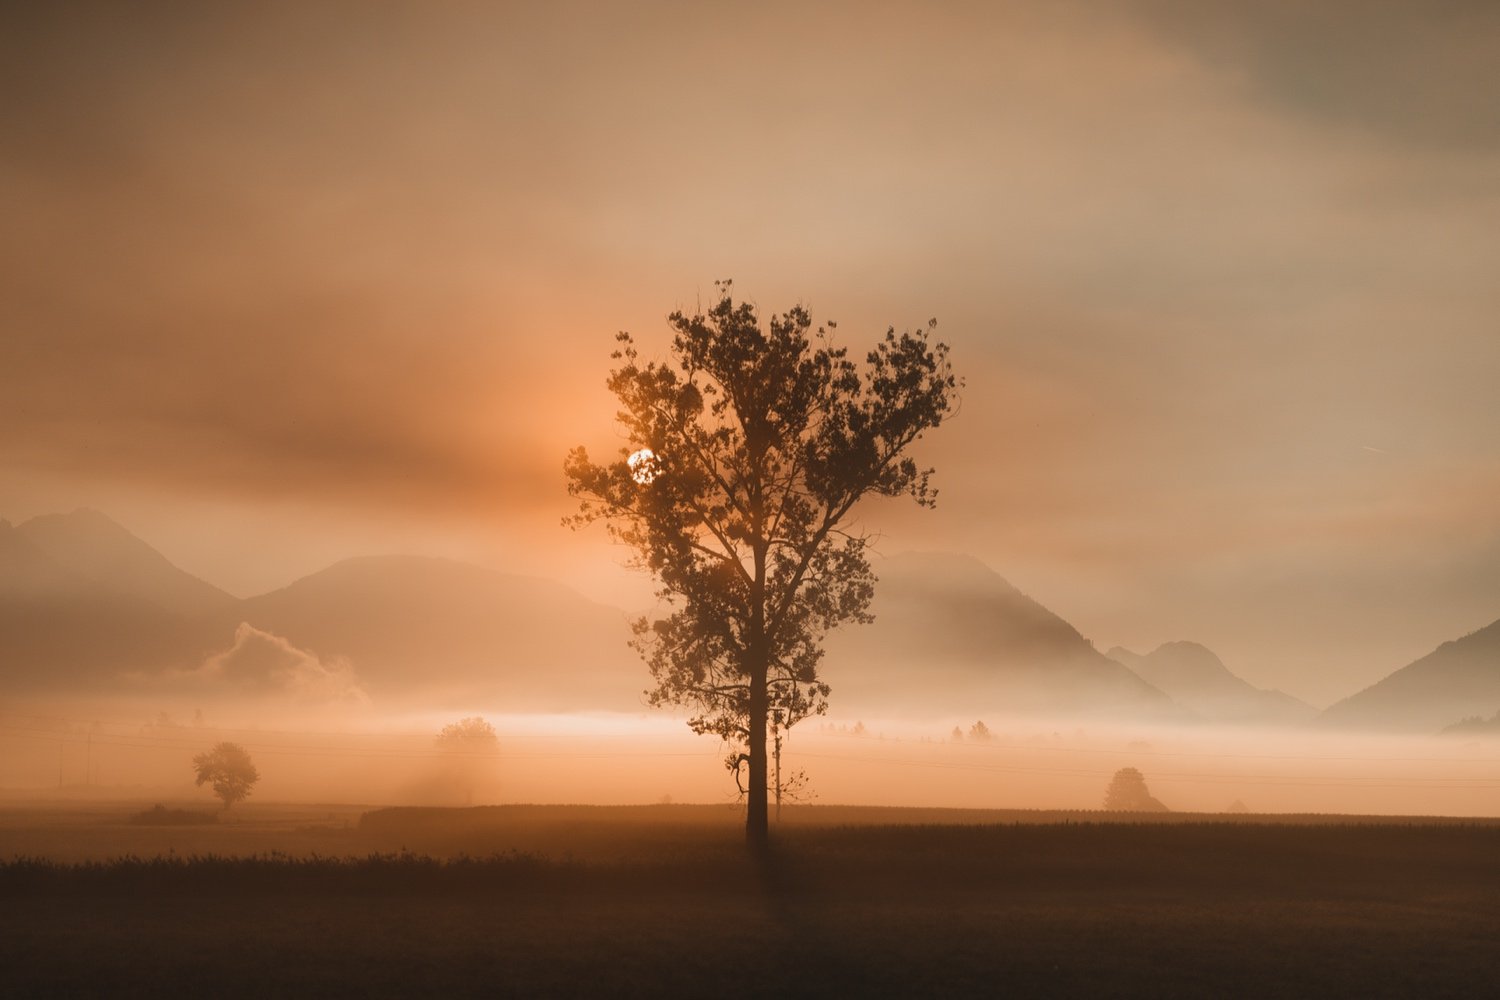 a7iv-sunrise-fog-photography_20.jpg